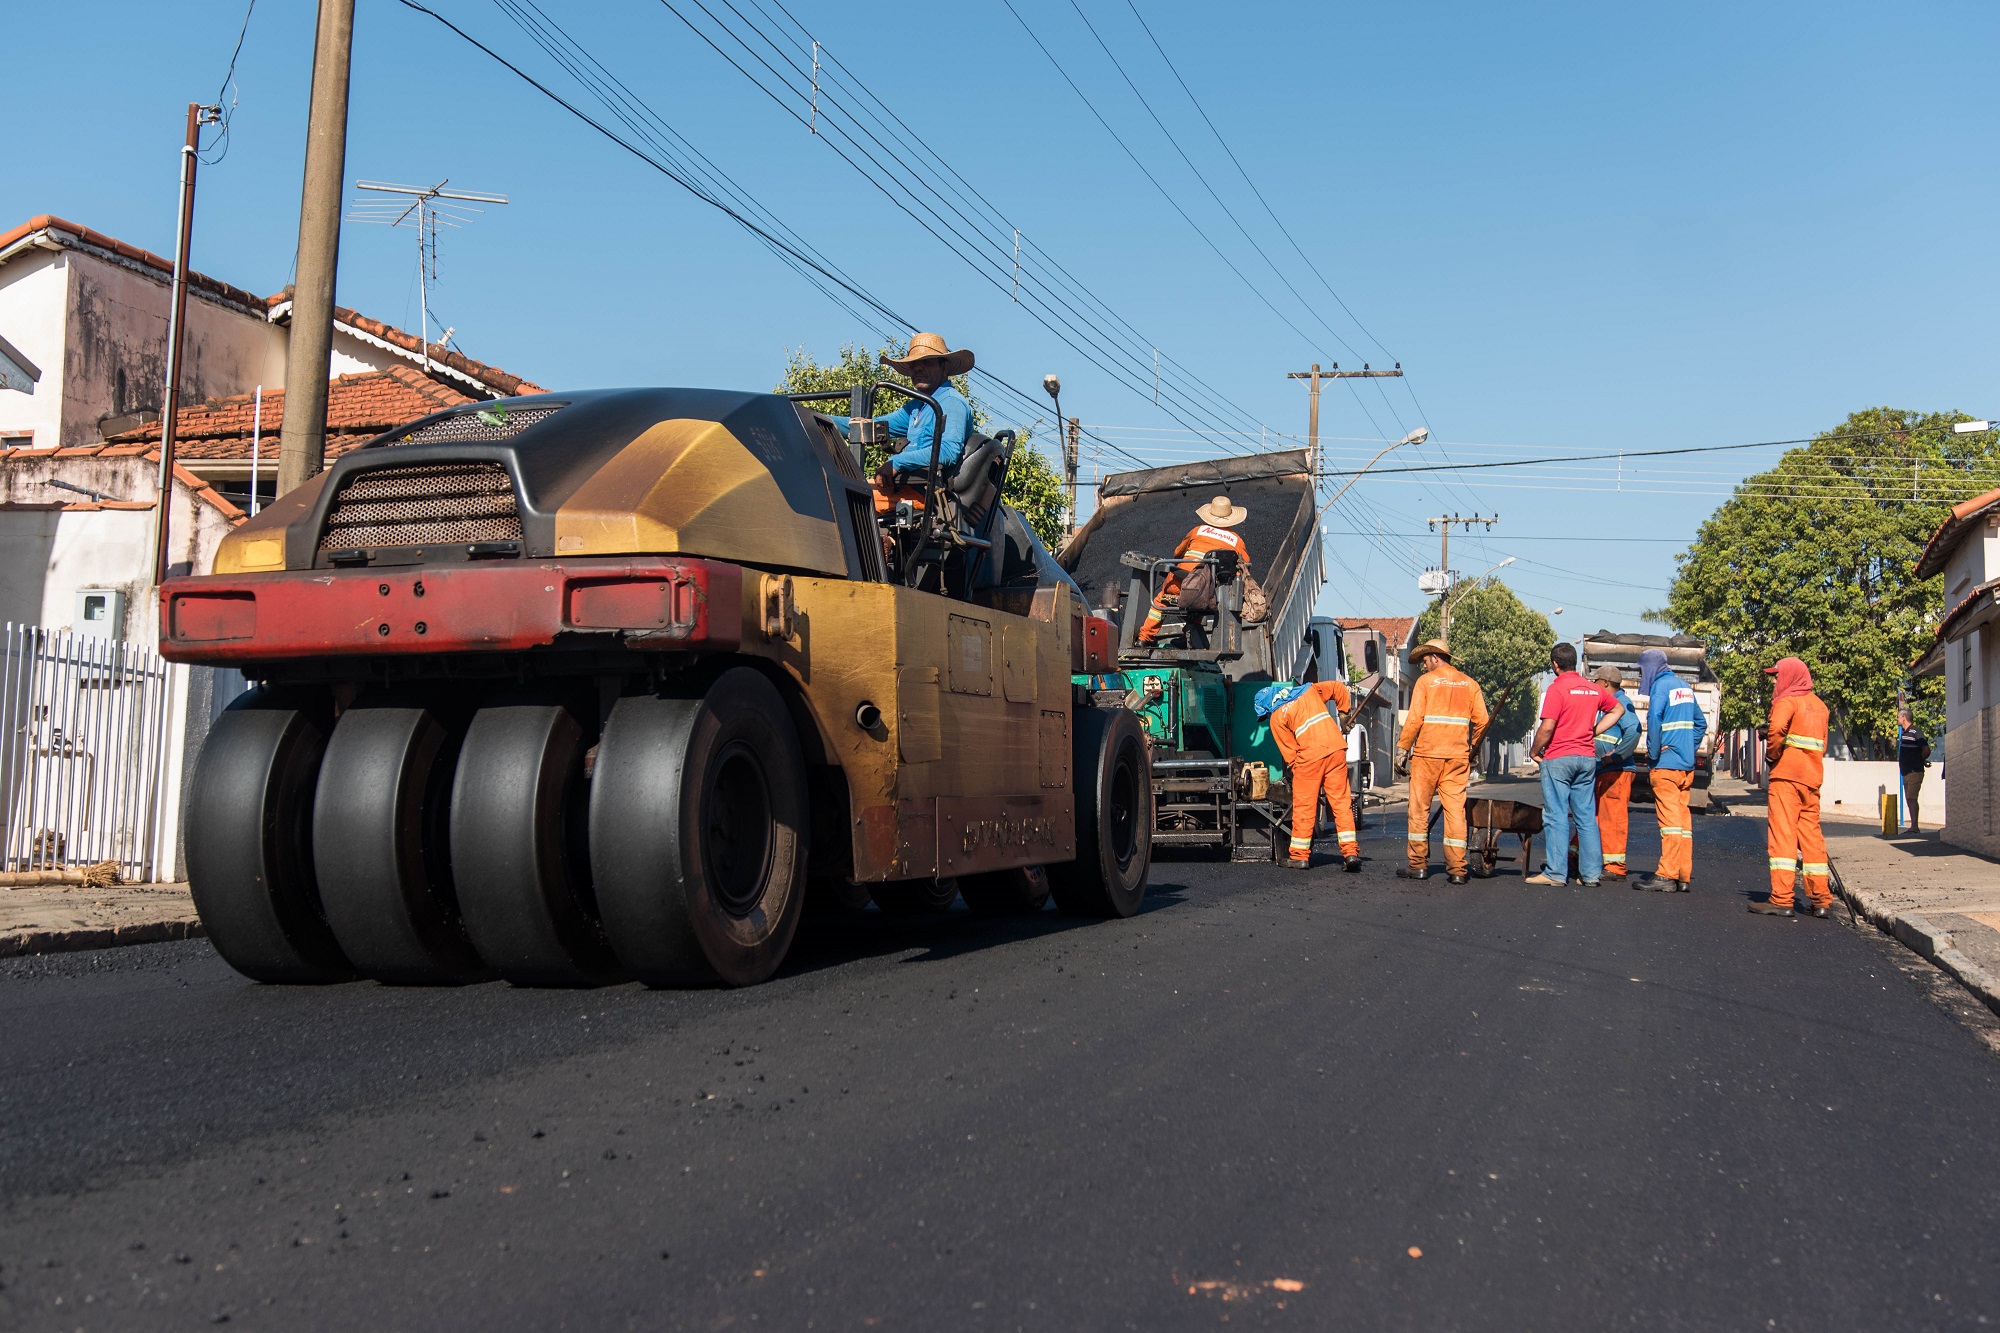 Obras seguem acontecendo no município por meio de empresa licitada para a realização das obras. Foto: Luís Fernando da Silva / Prefeitura Municipal de Urupês